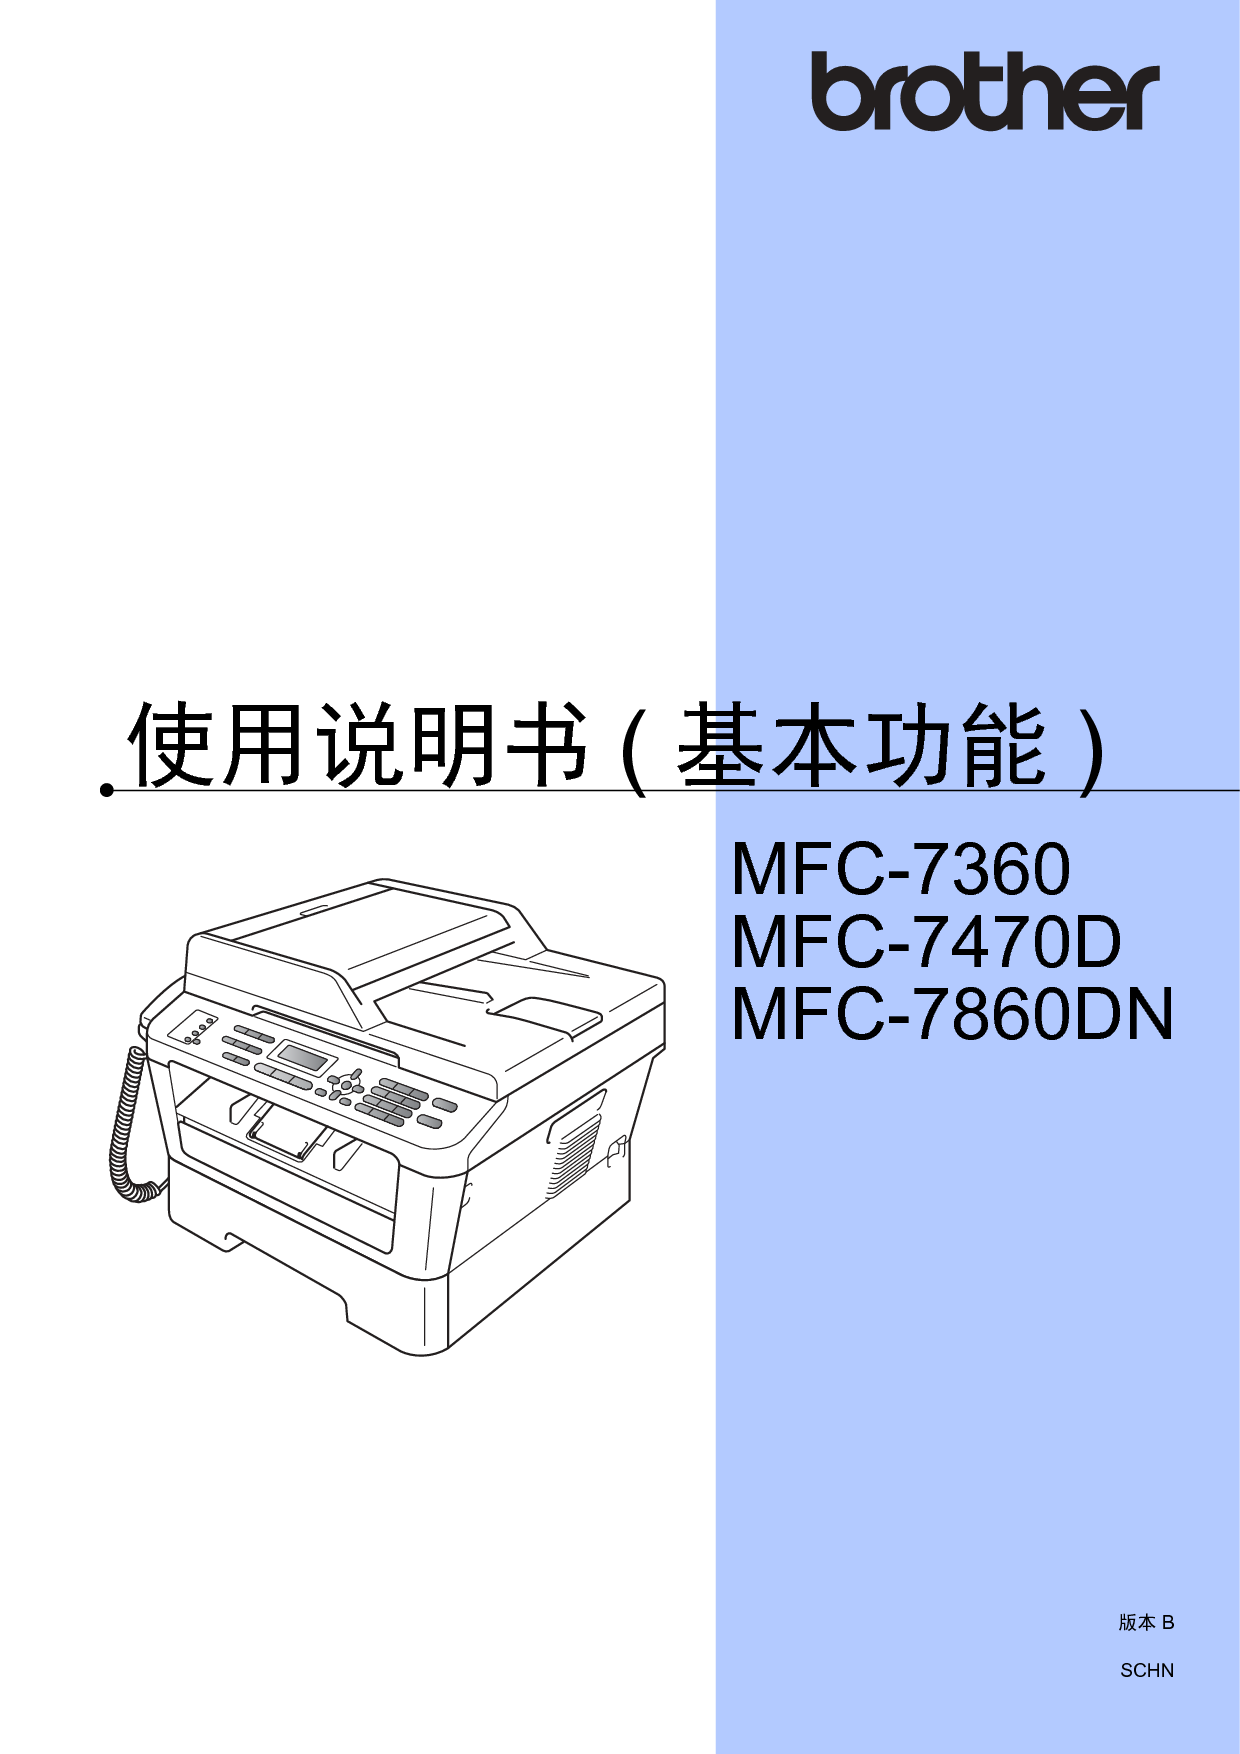 兄弟 Brother MFC-7360 基础使用指南 封面